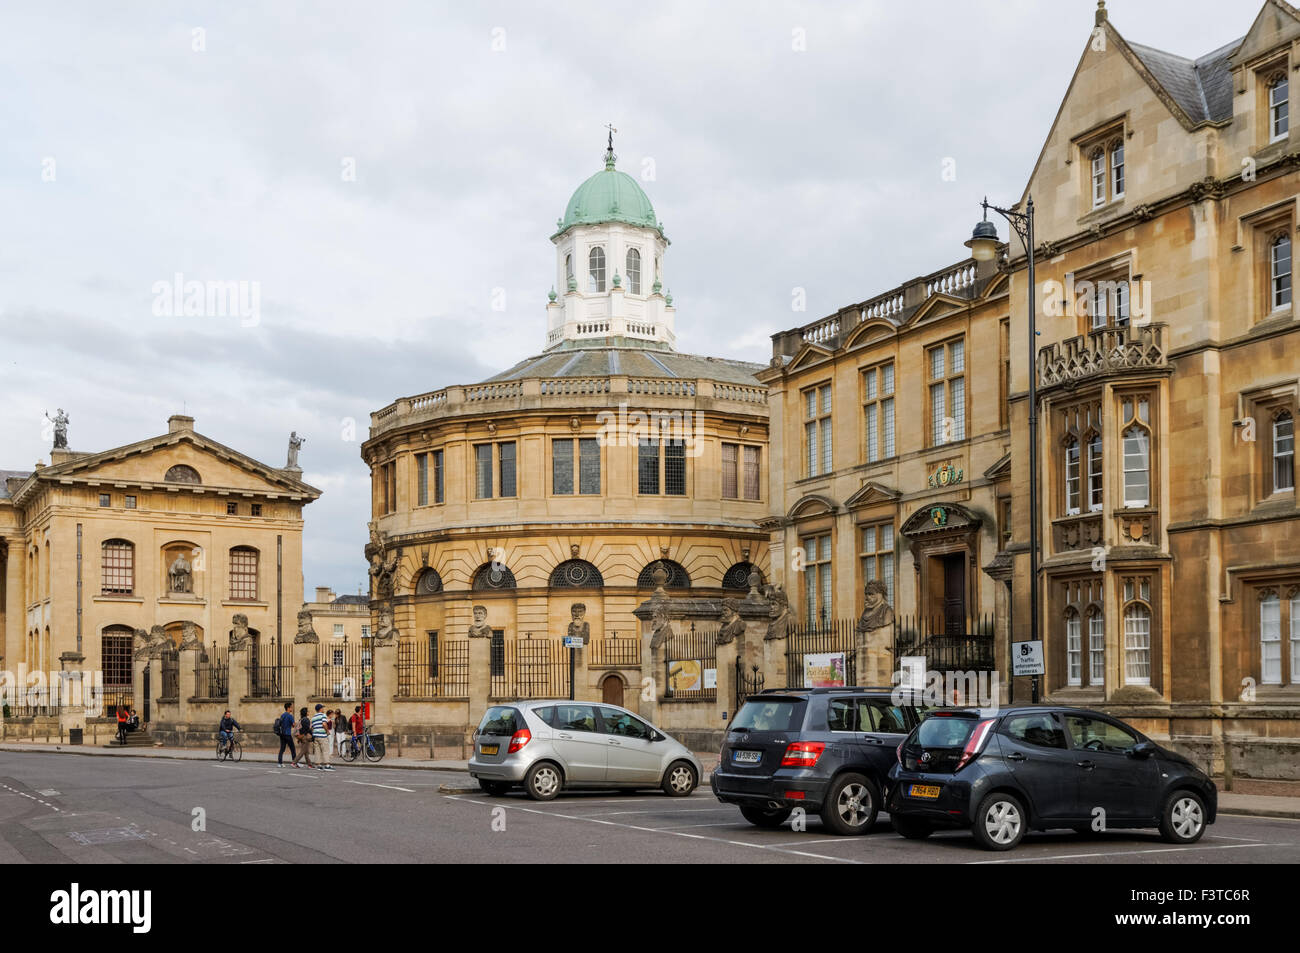 17e et 18e siècle bâtiments à Broad Street à Oxford Oxfordshire England Royaume-Uni UK Banque D'Images